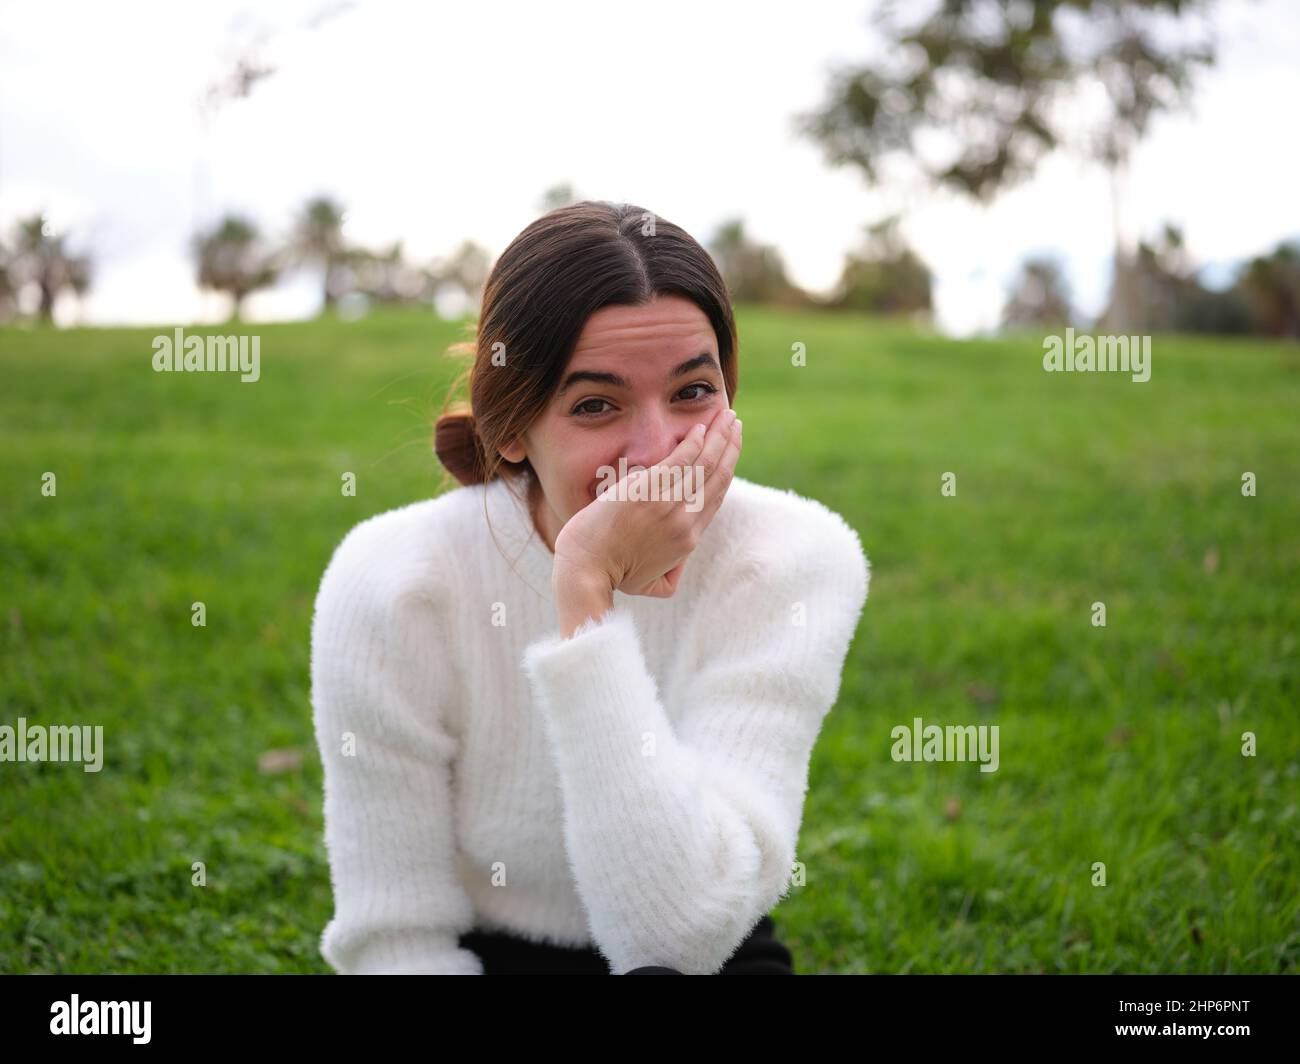 Eine fröhliche junge Frau im Park, die lachend auf die Kamera schaut, die ihren Mund mit der Hand bedeckt. Stockfoto